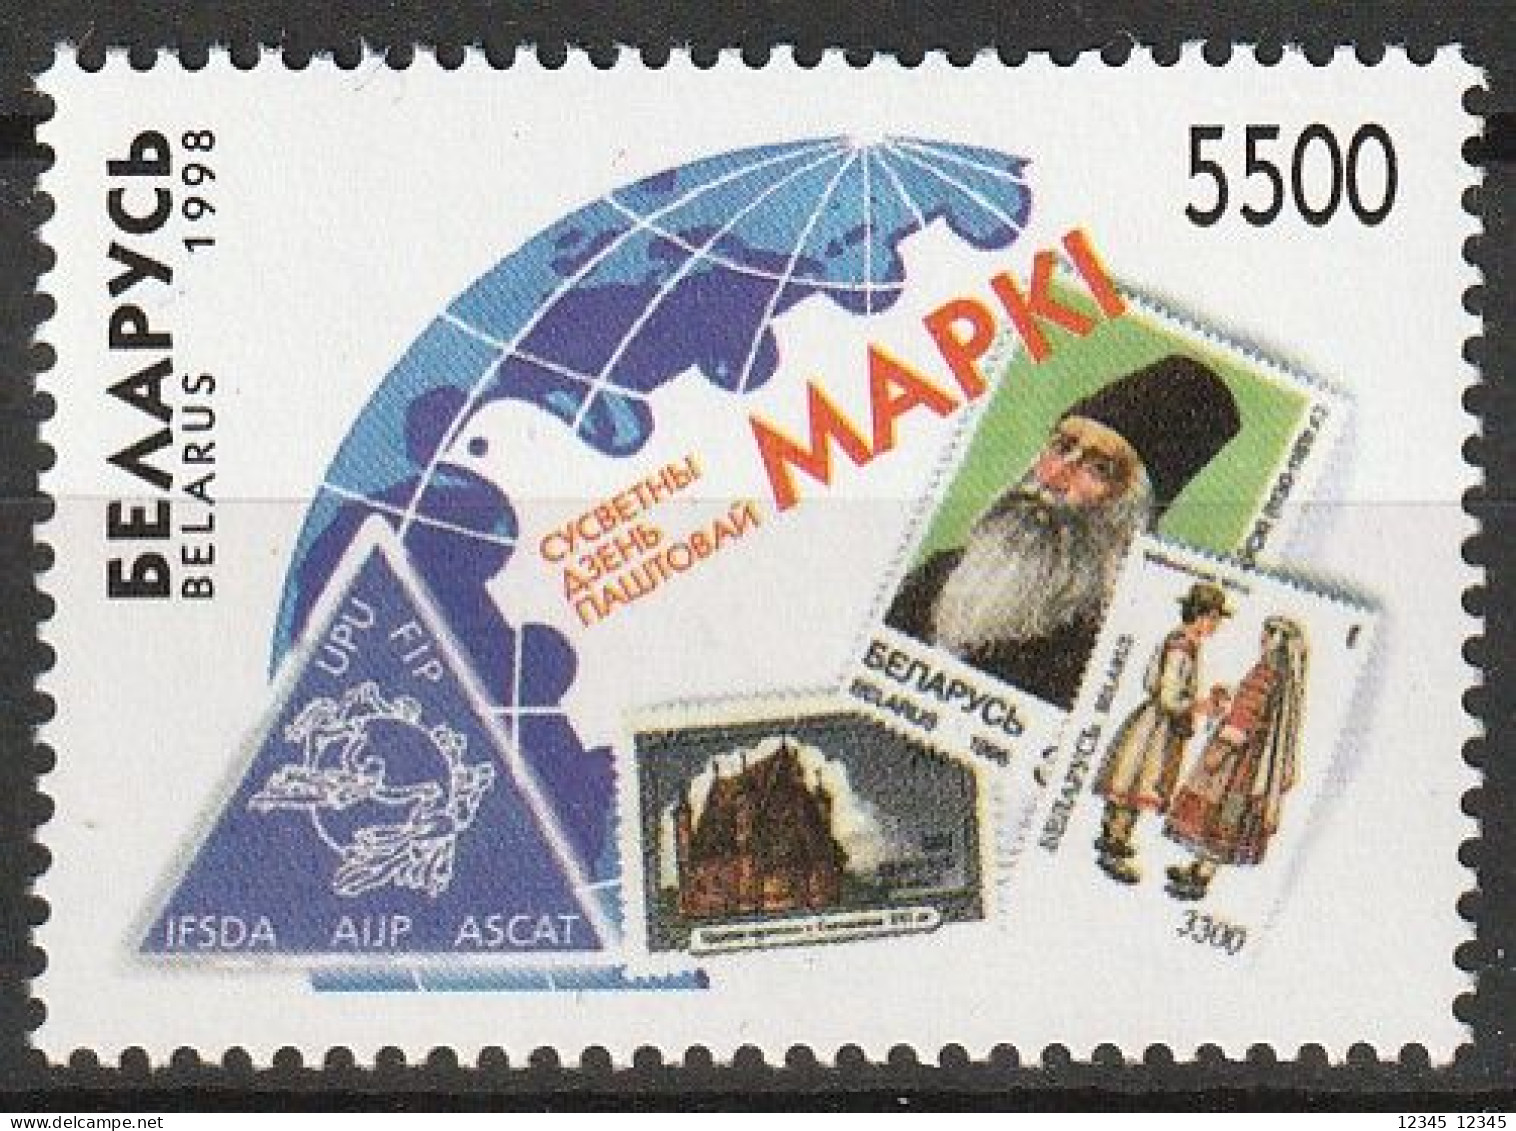 Wit Rusland 1998, Postfris MNH, World Post Day. - Wit-Rusland